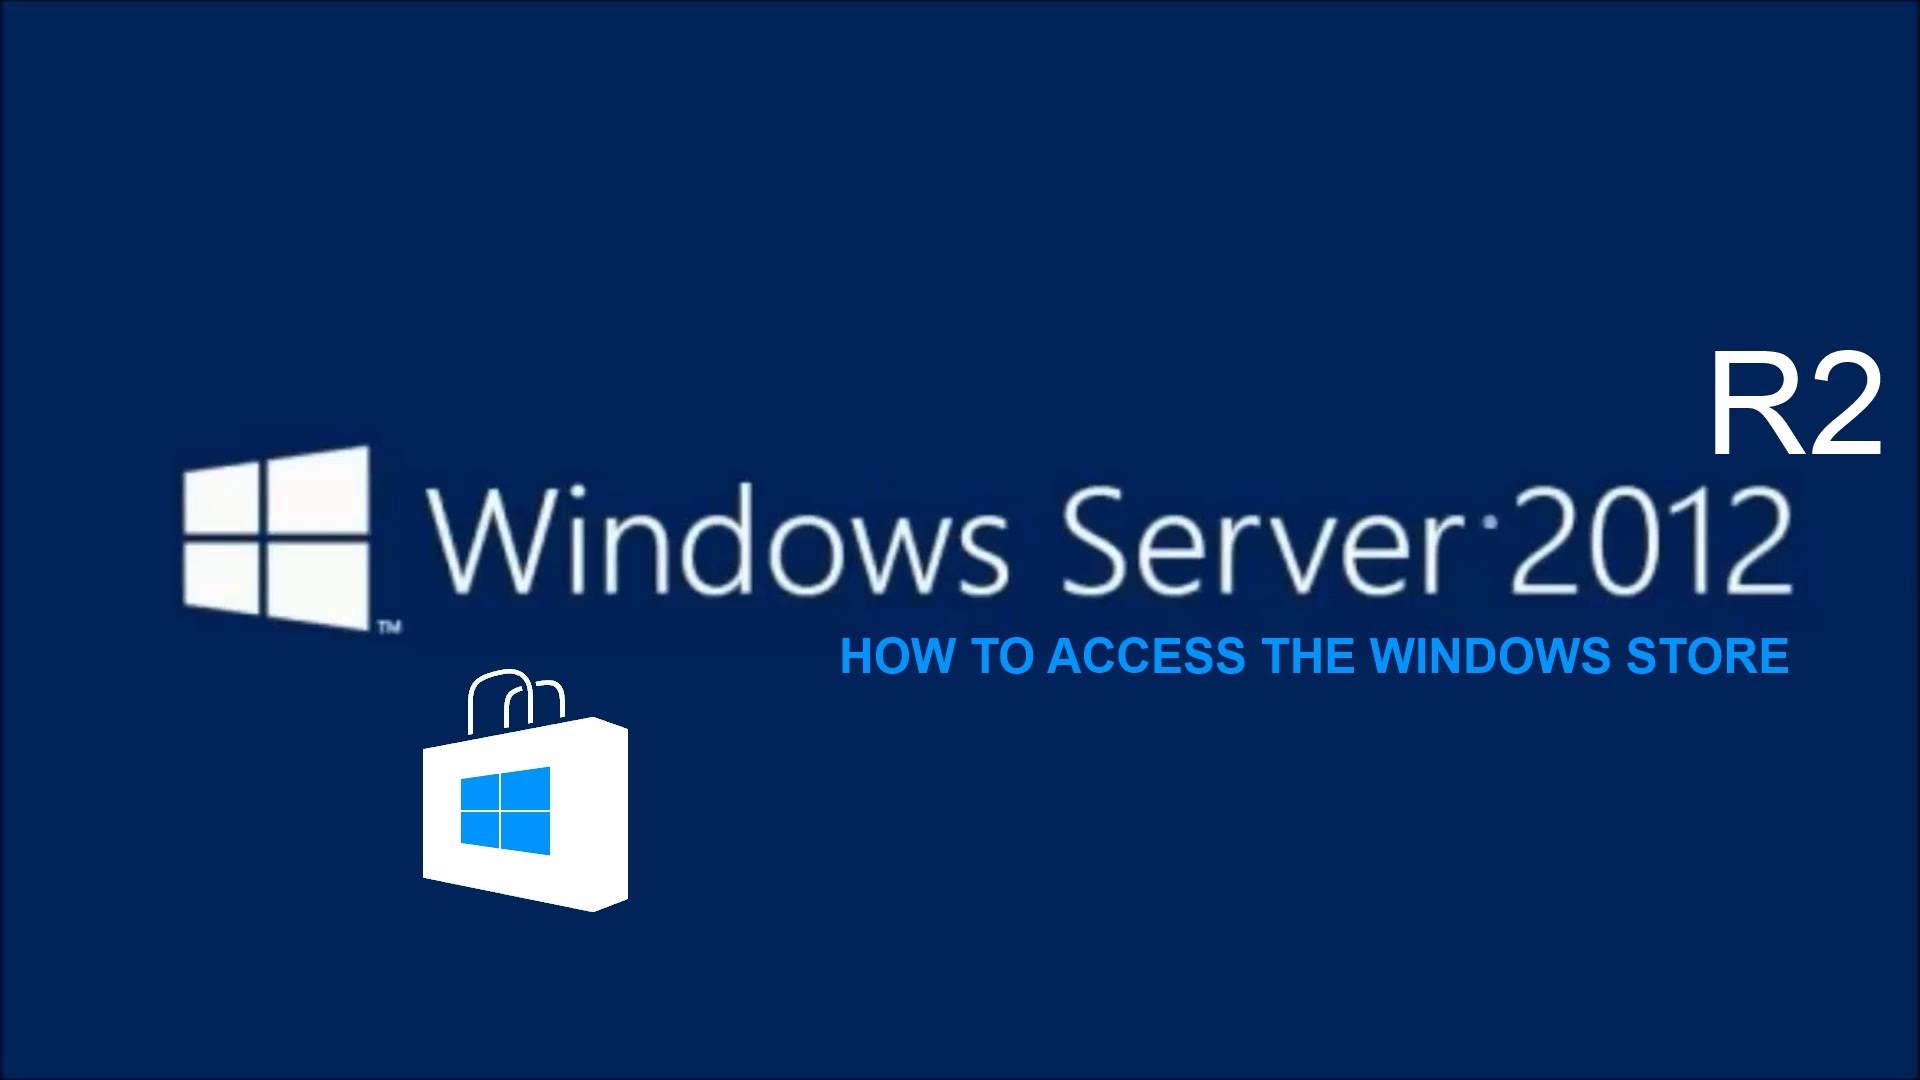 Windows Server 2012 R2 Logo